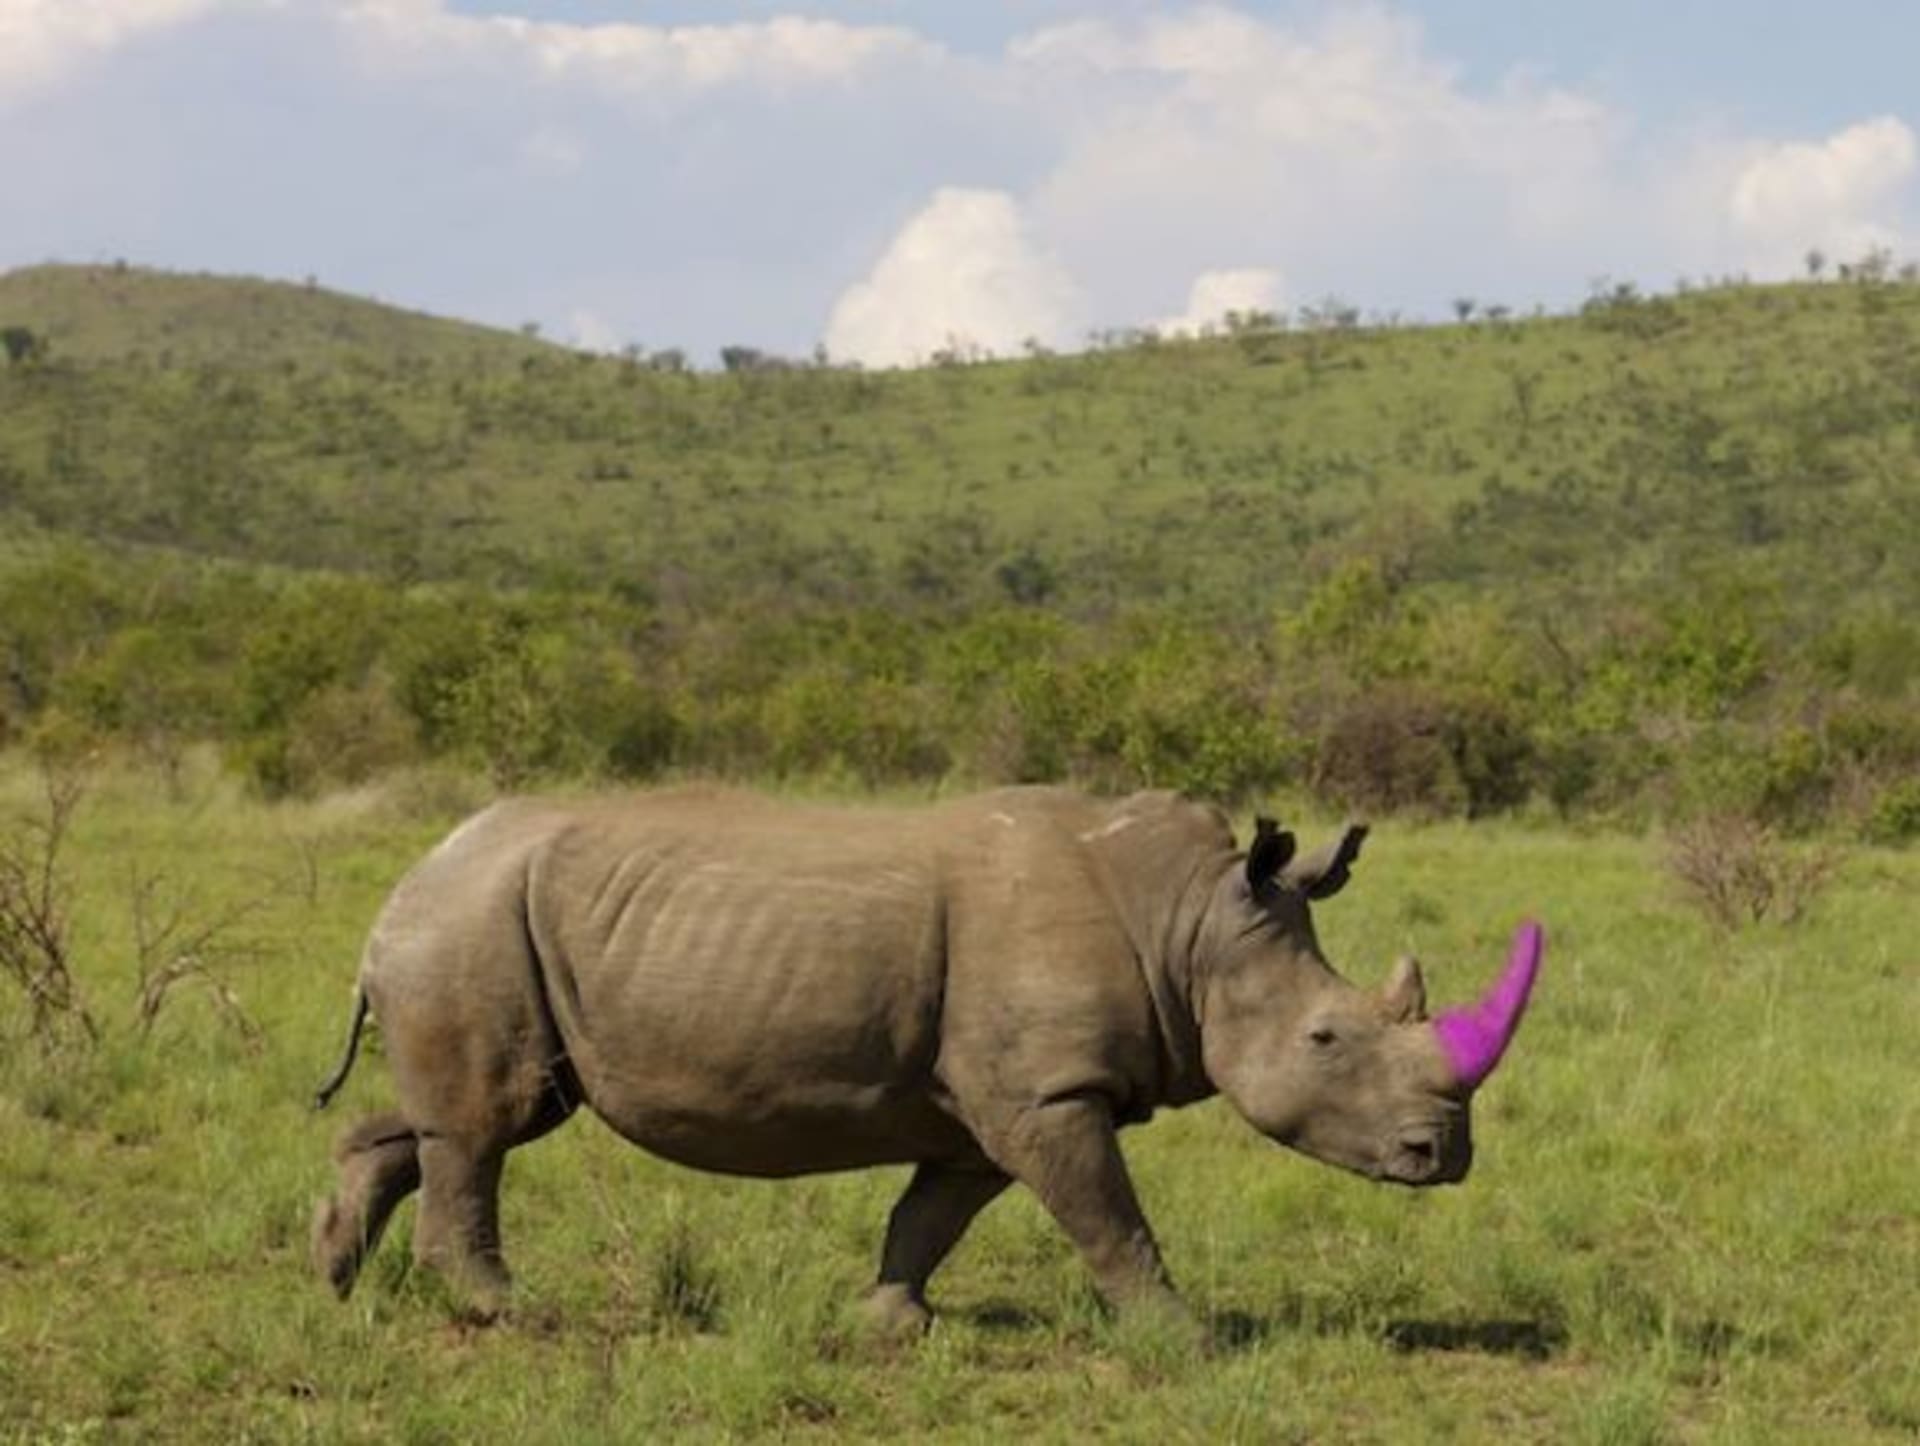 Nosorožec s růžovým rohem